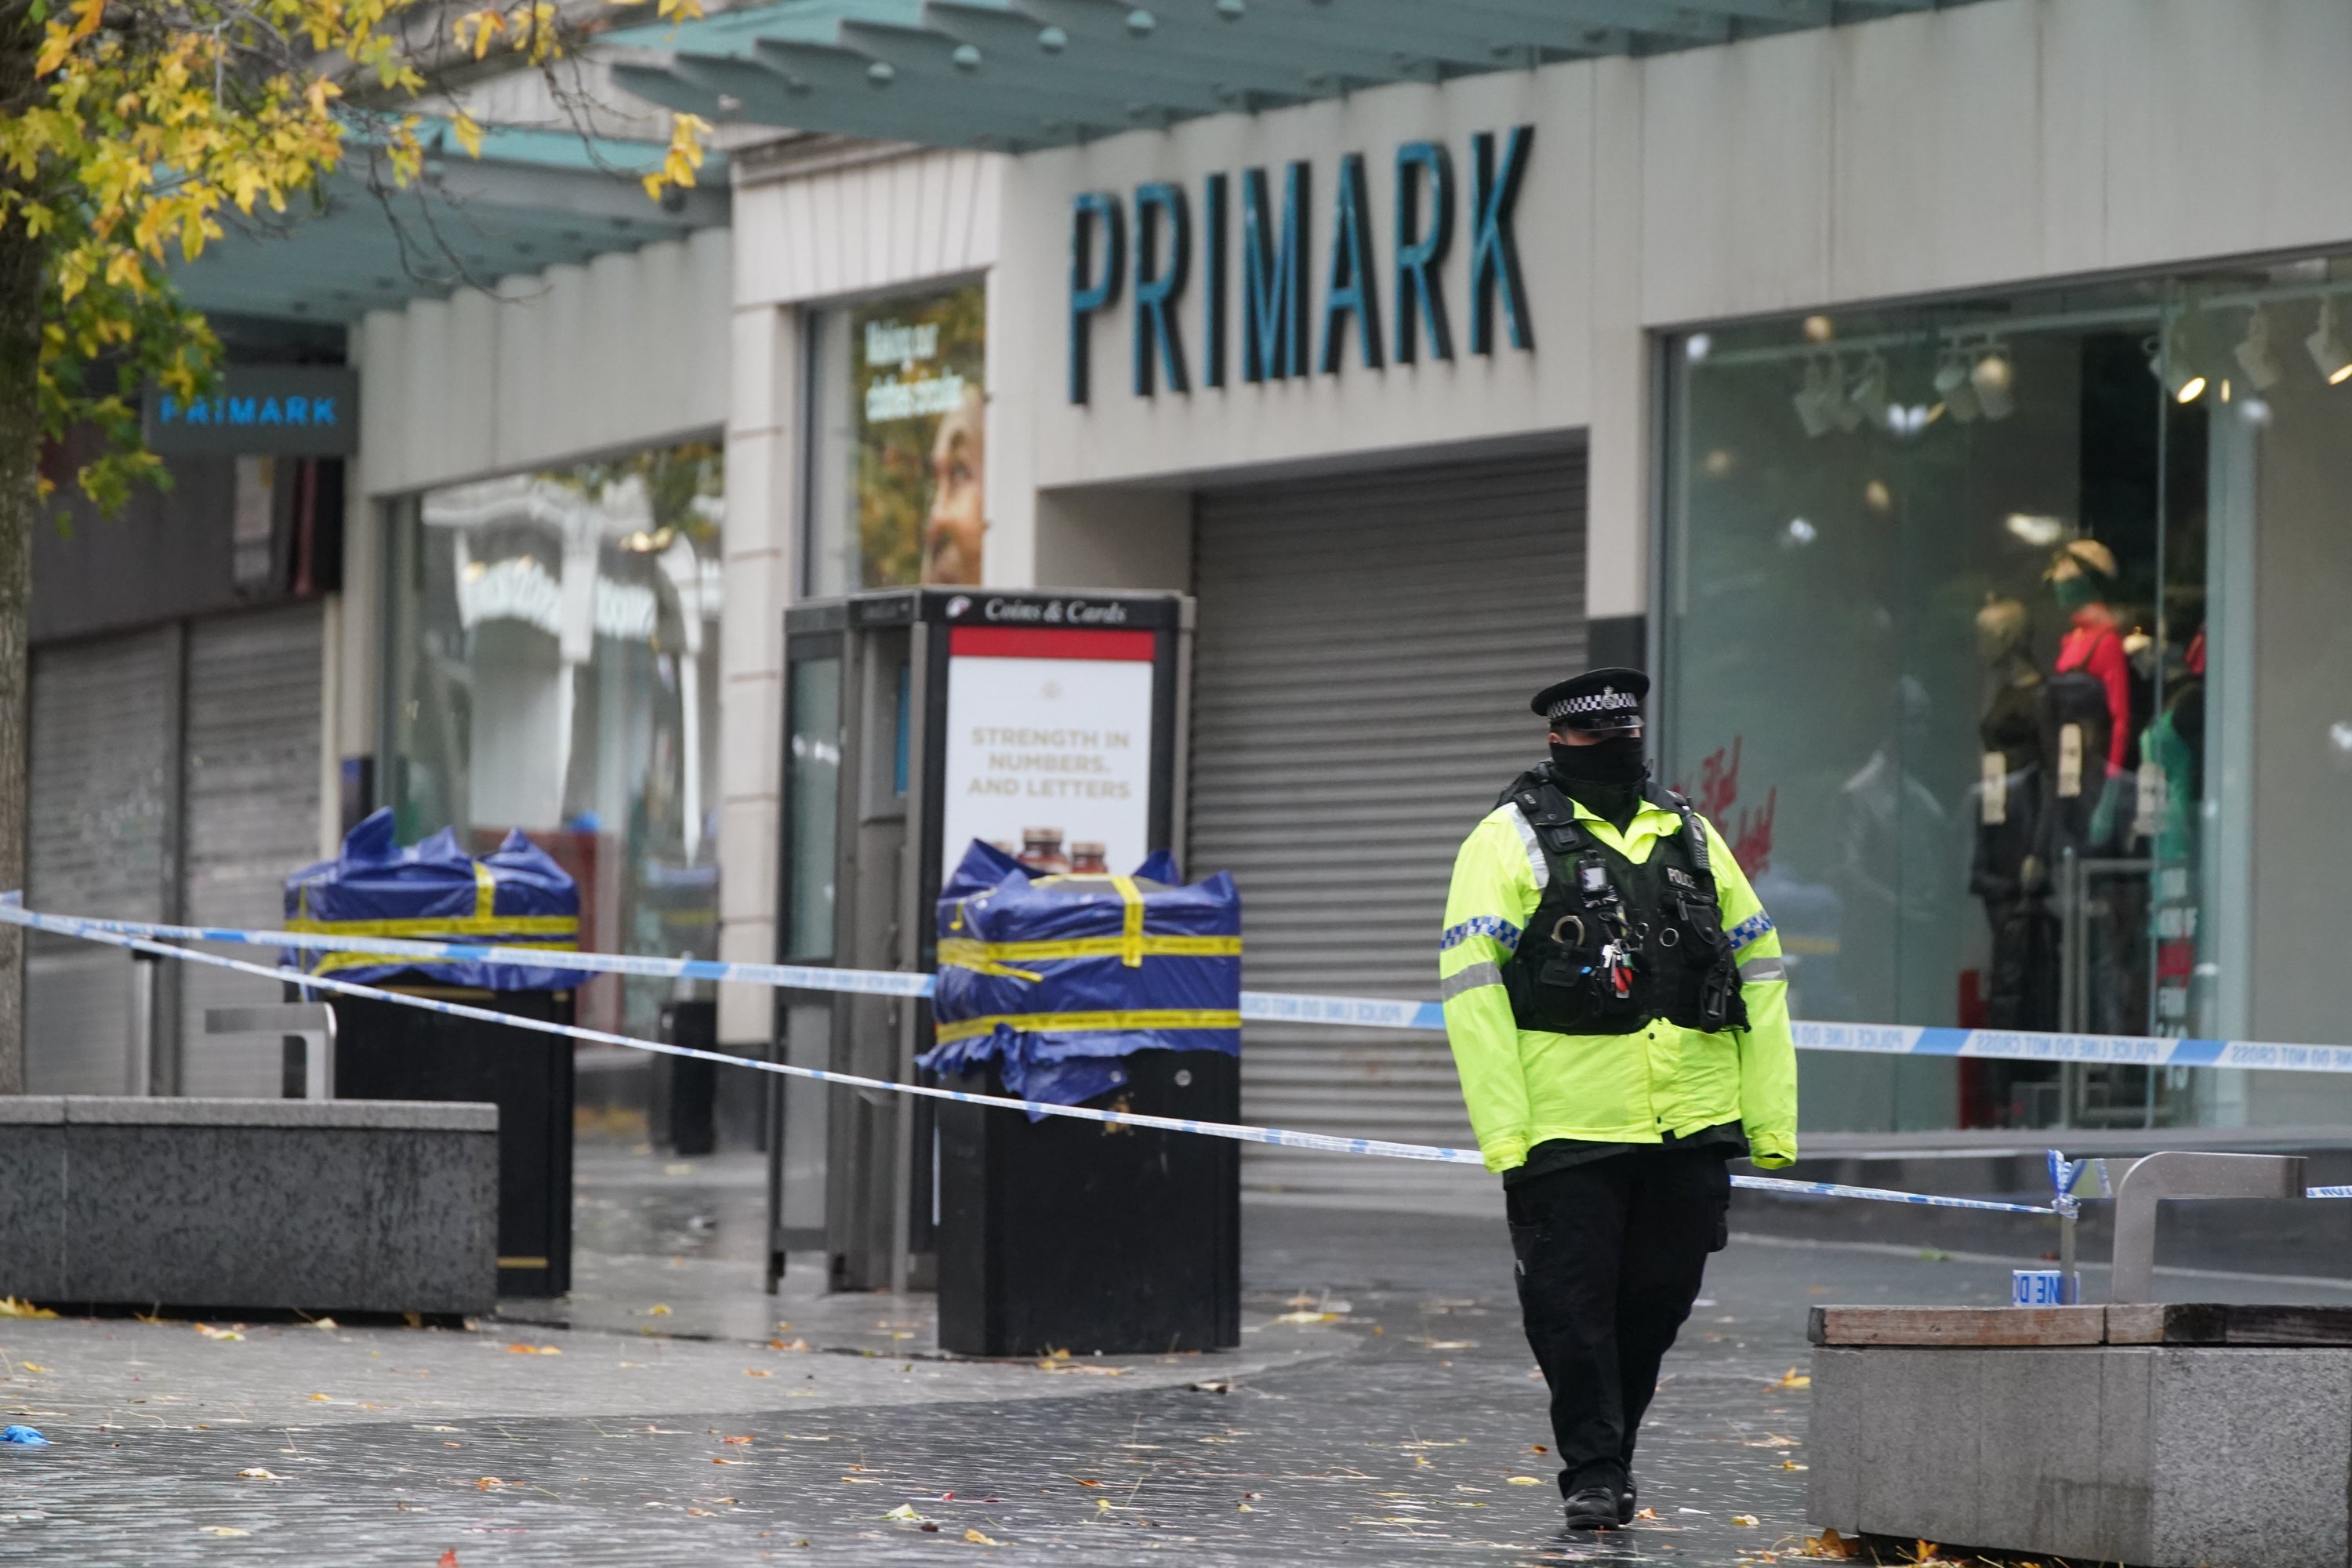 A police cordon near the scene in Liverpool city centre (PA)